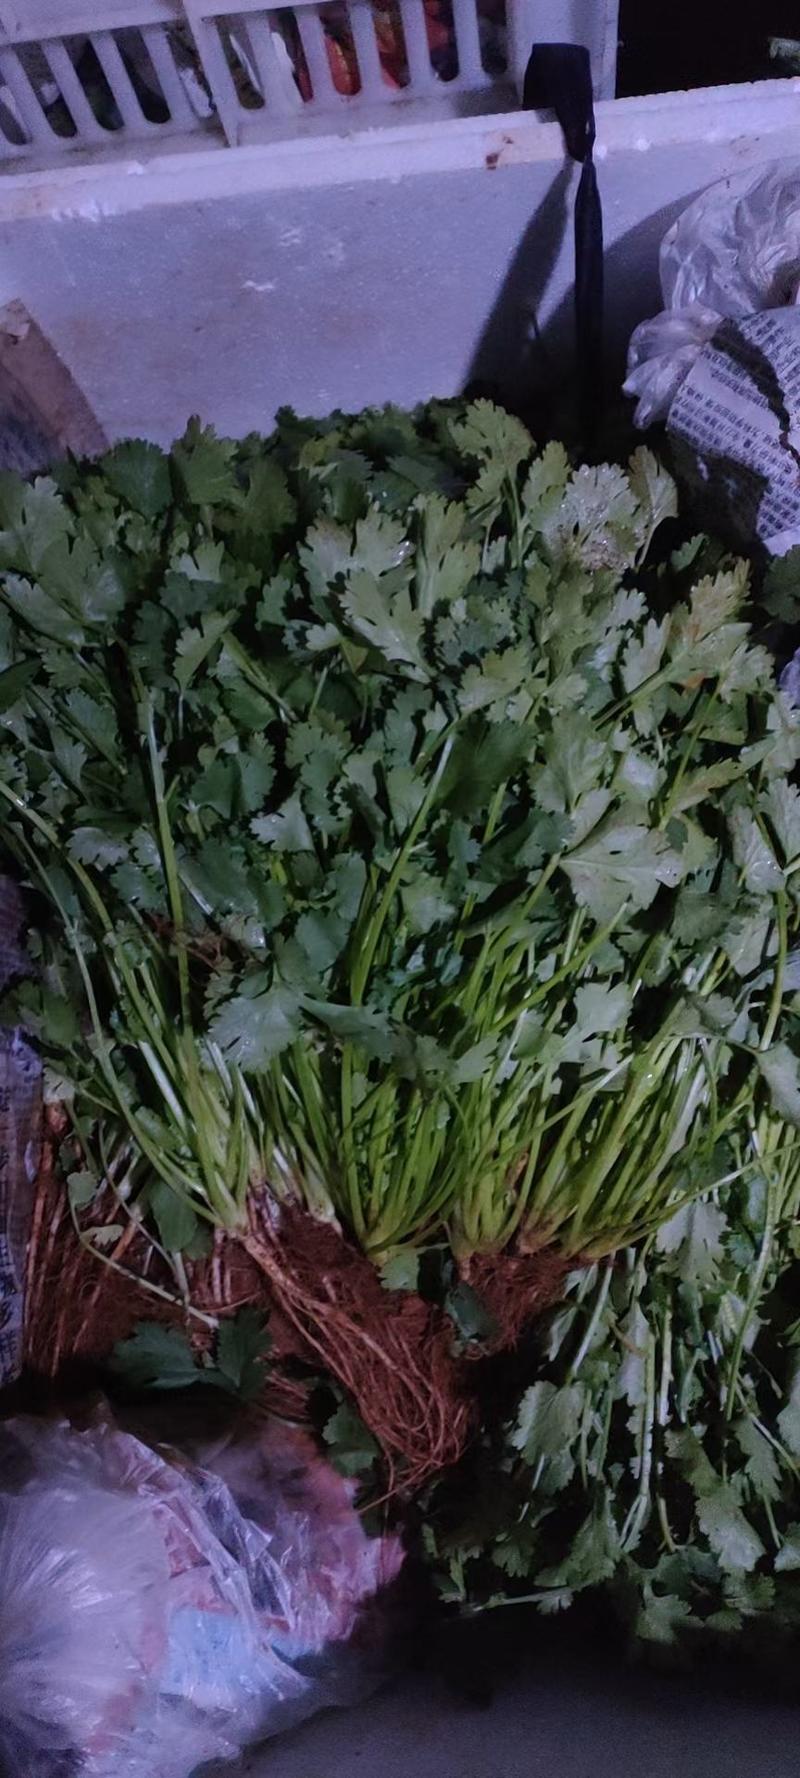 澳威特F1香菜种子叶簇直立纤维少抗病虫害耐热耐寒抗耐抽苔